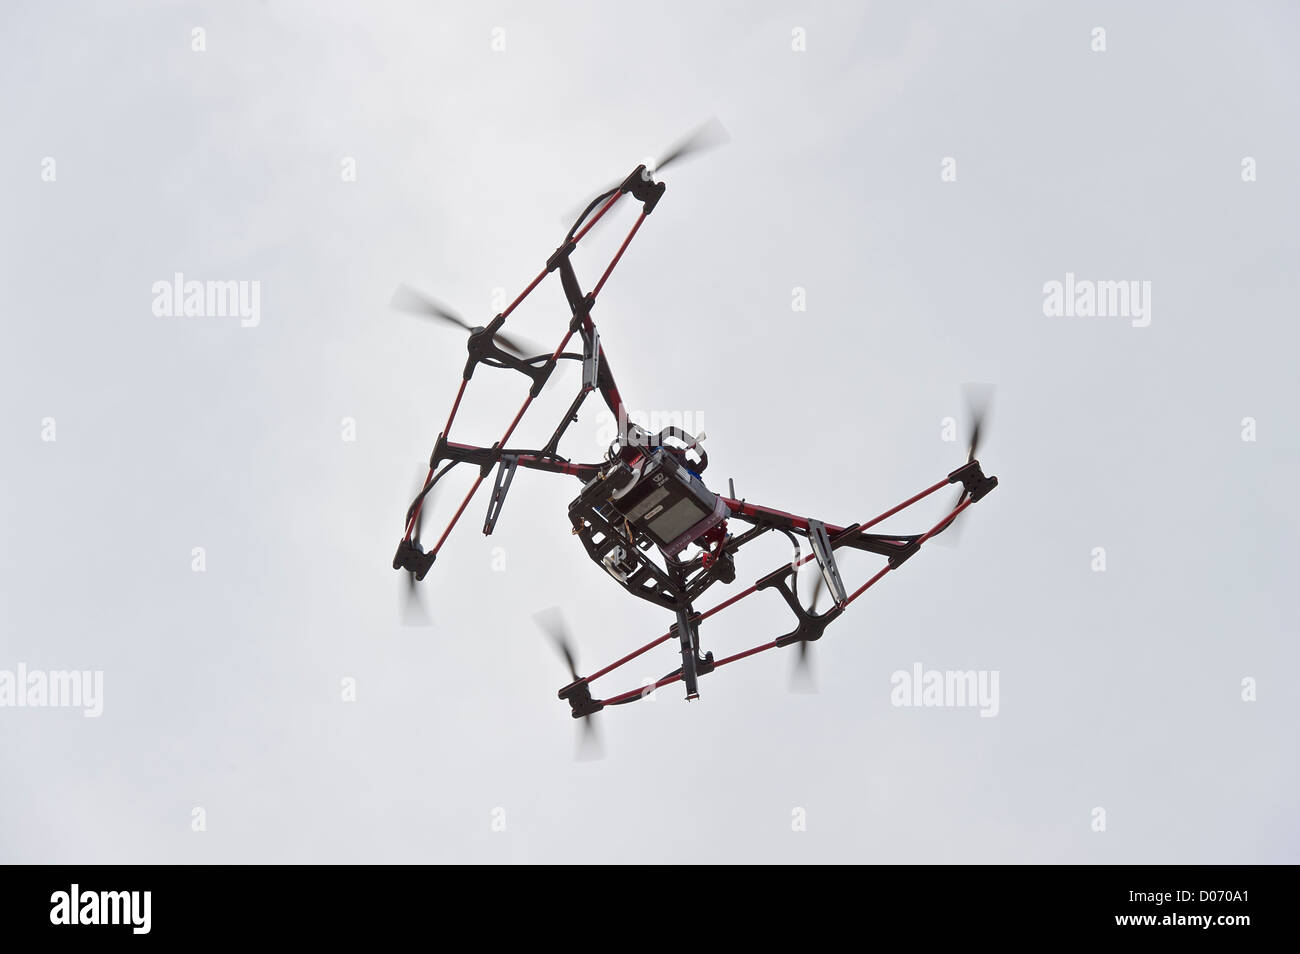 Un helicóptero controlado por radio para videos y fotografía aérea, maratón de Turín, Turín, Piamonte, Italia Foto de stock